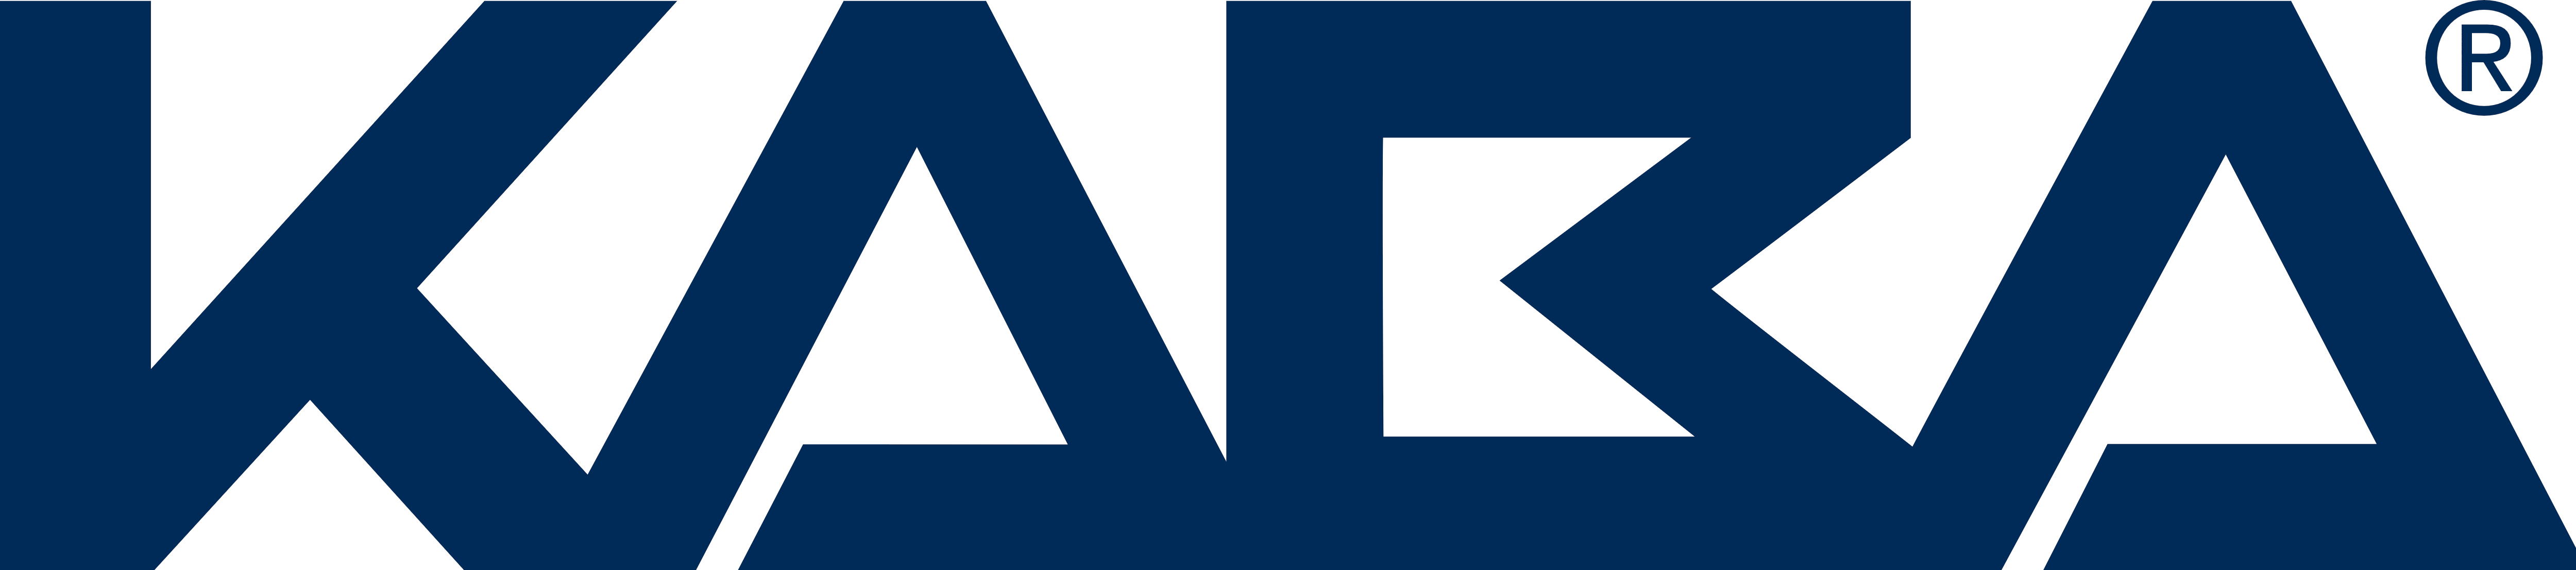 Kaba Logo - Kaba logo – Logos Download